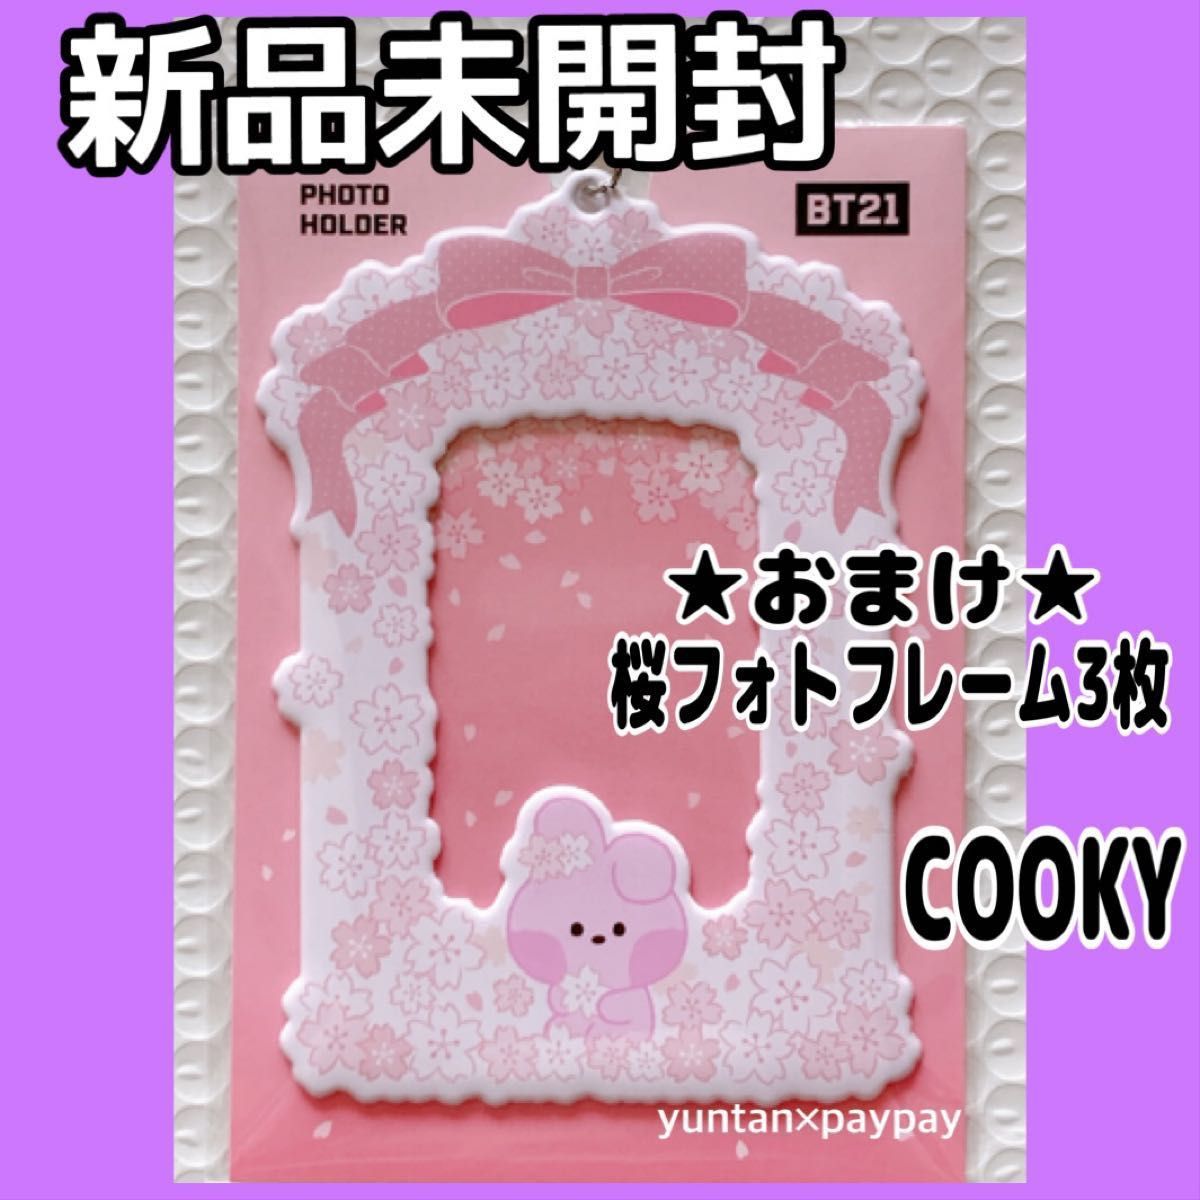 公式 BT21 フォトホルダー minini 桜 COOKY クッキー BTS グク ジョングク トレカケース カードケース 新品